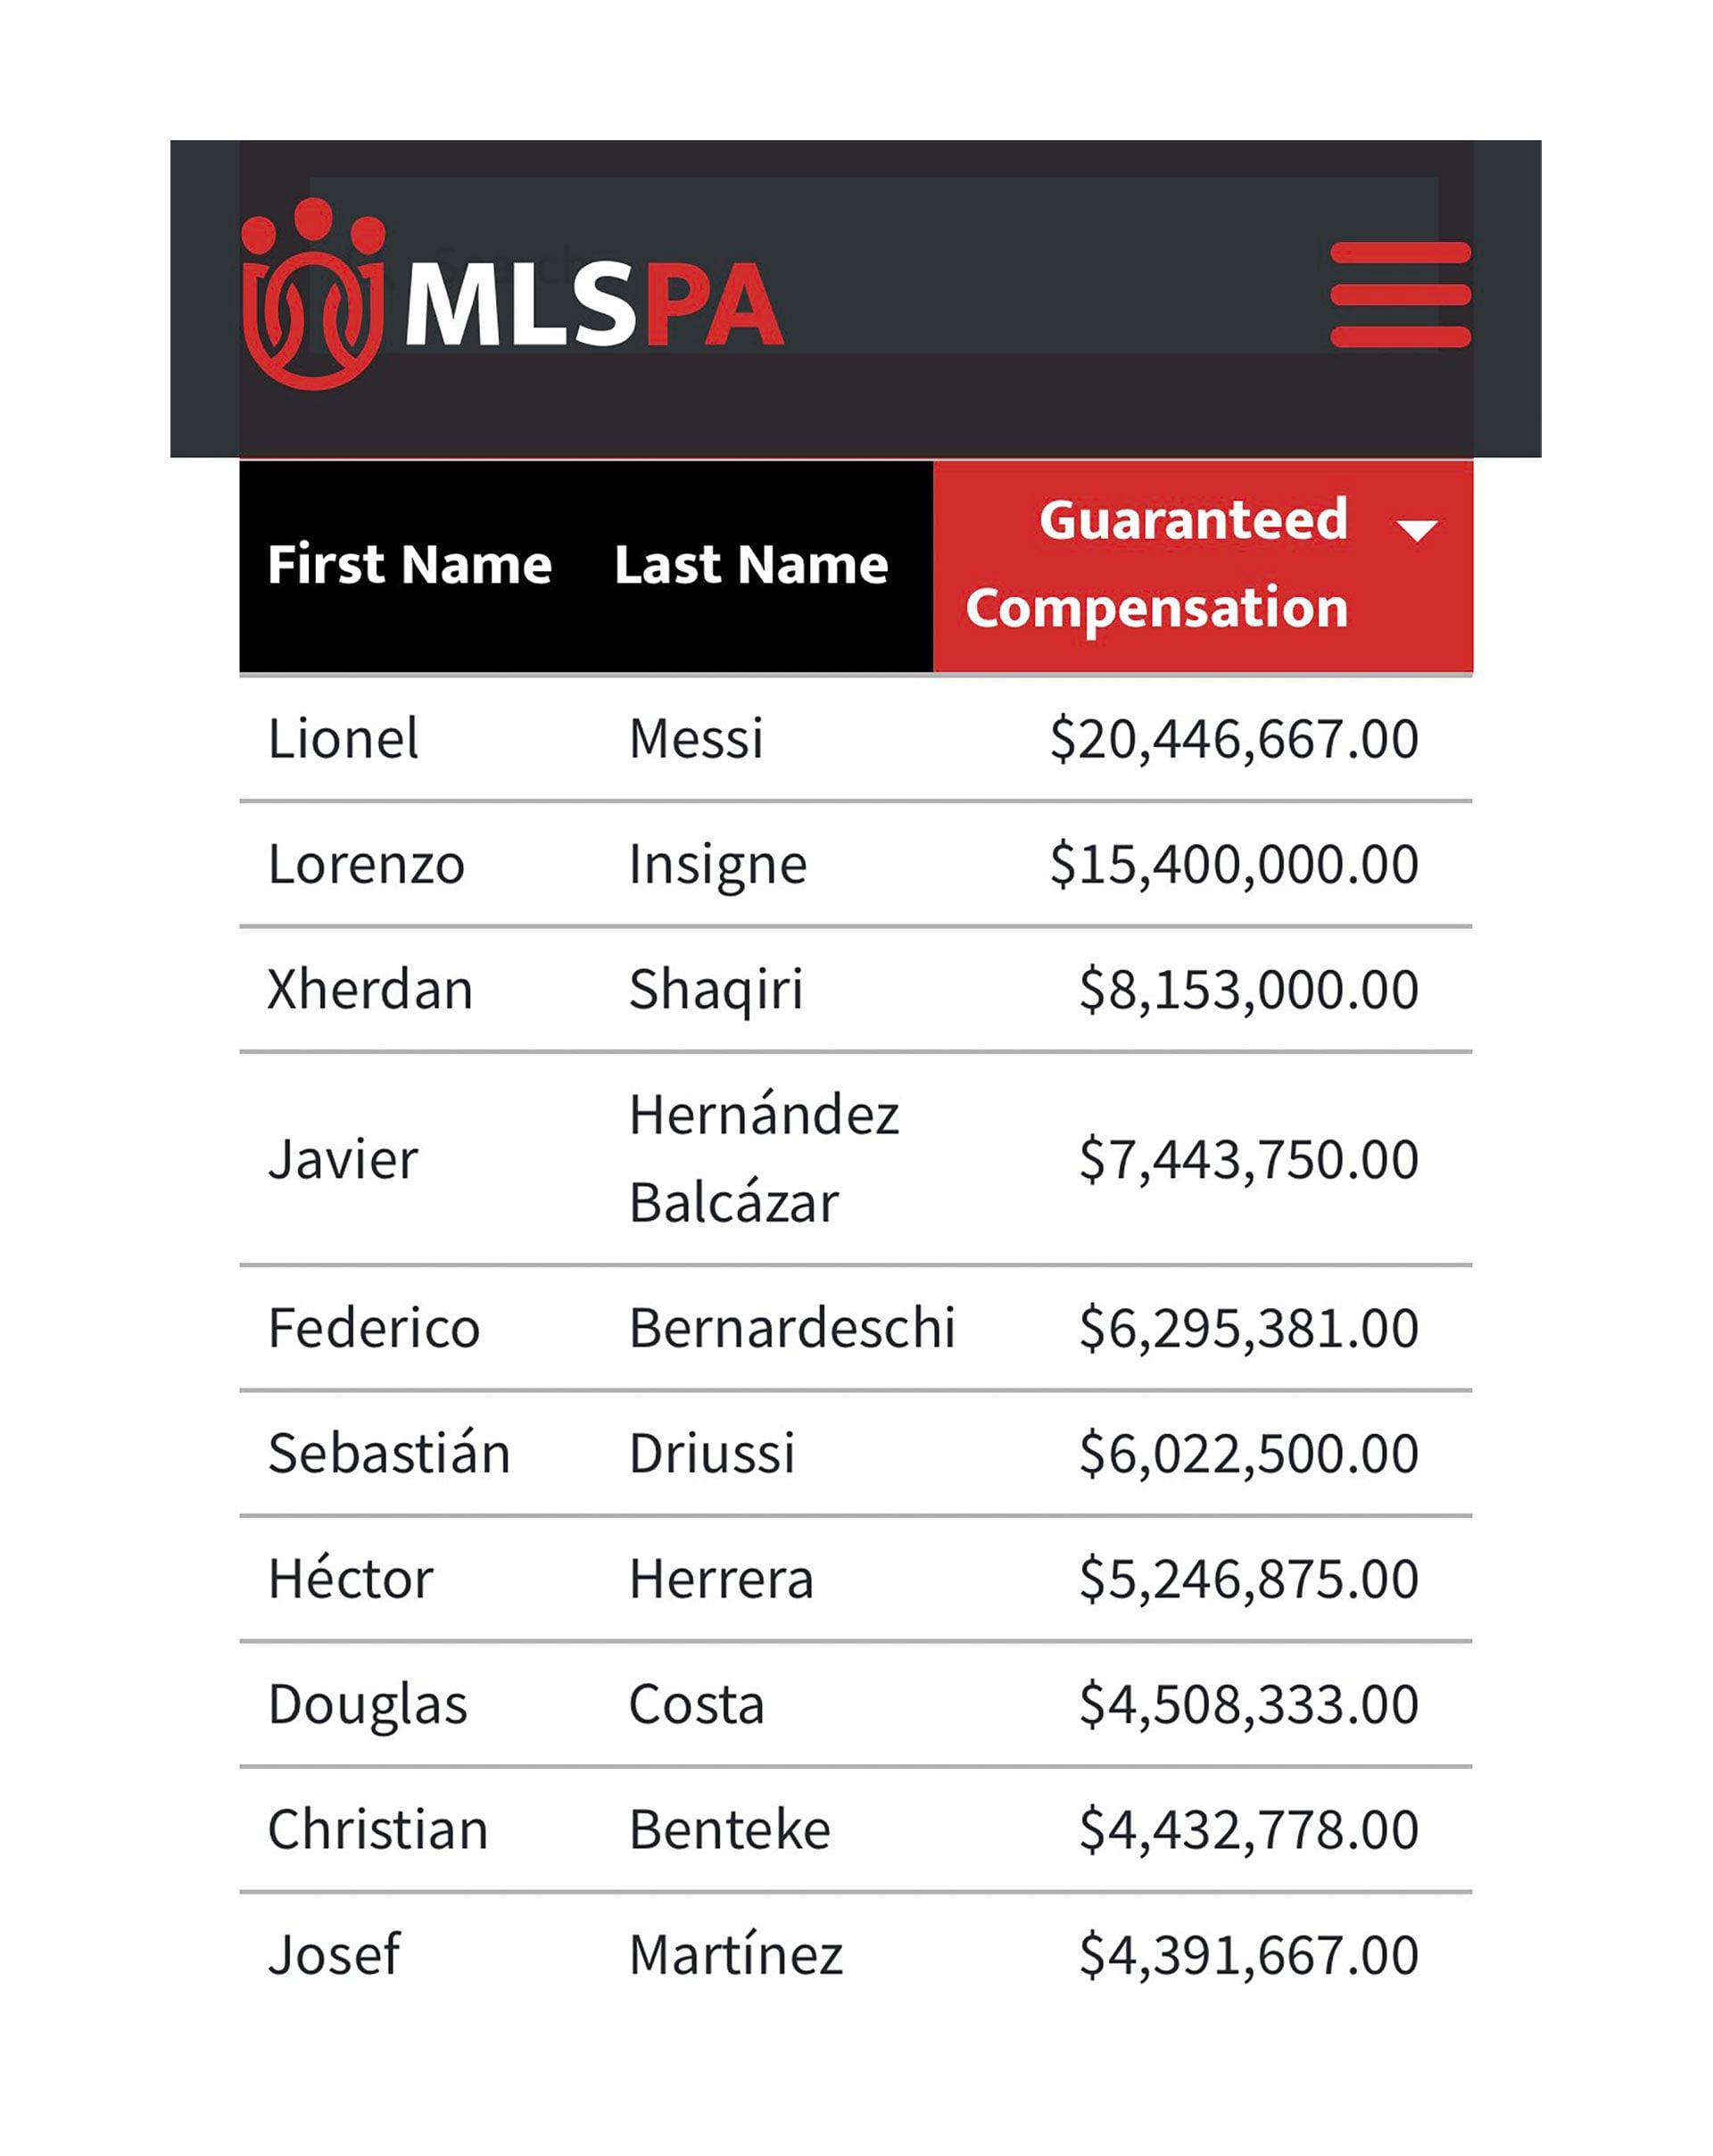 Los 10 jugadores con el salario más alto de la MLS